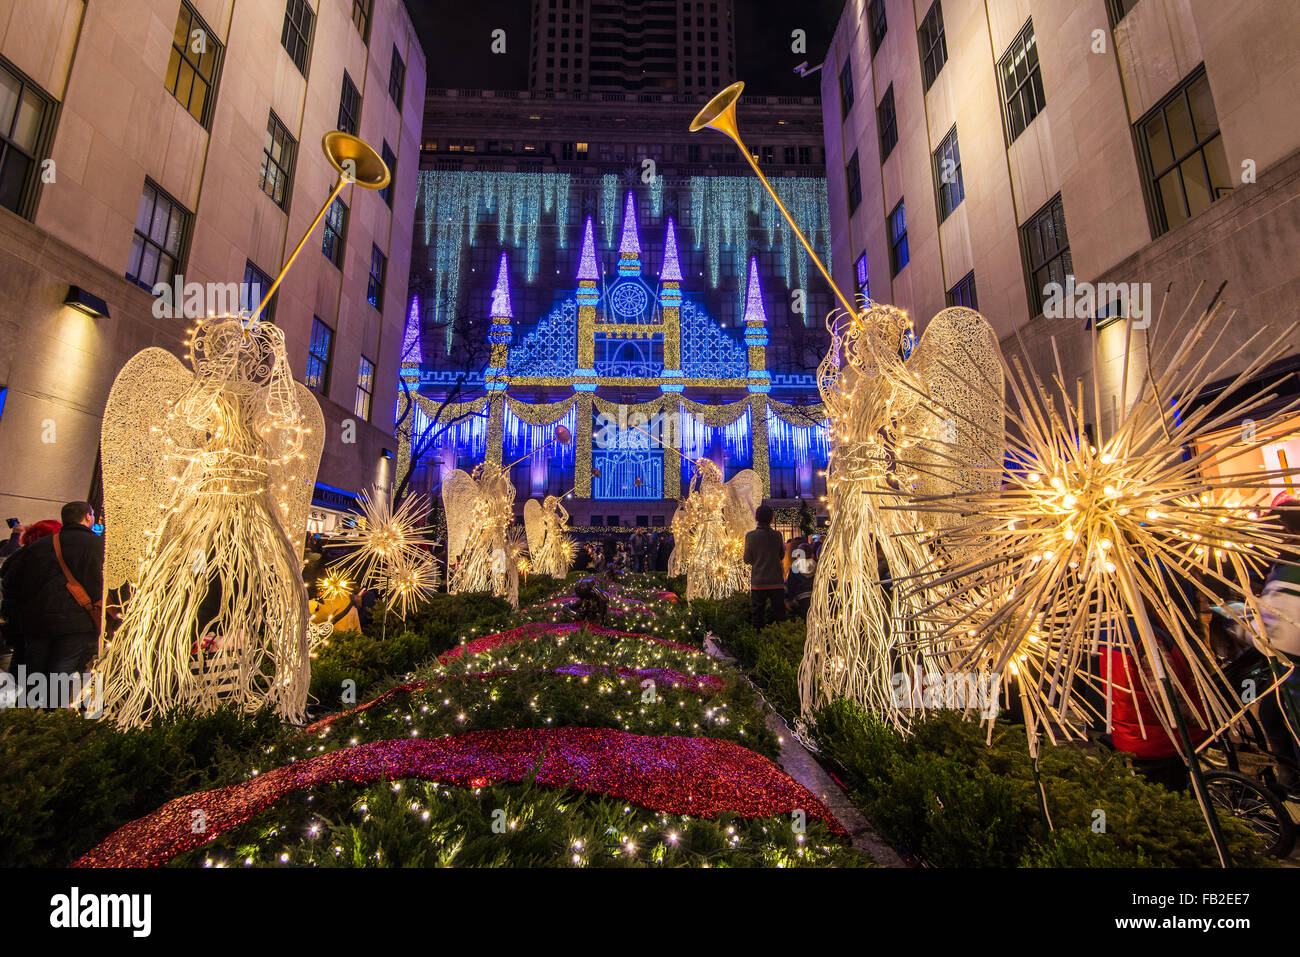 Gli angeli di Natale al Rockefeller Center Channel giardini con Saks department store Natale spettacolo di luci dietro, New York, Stati Uniti d'America Foto Stock